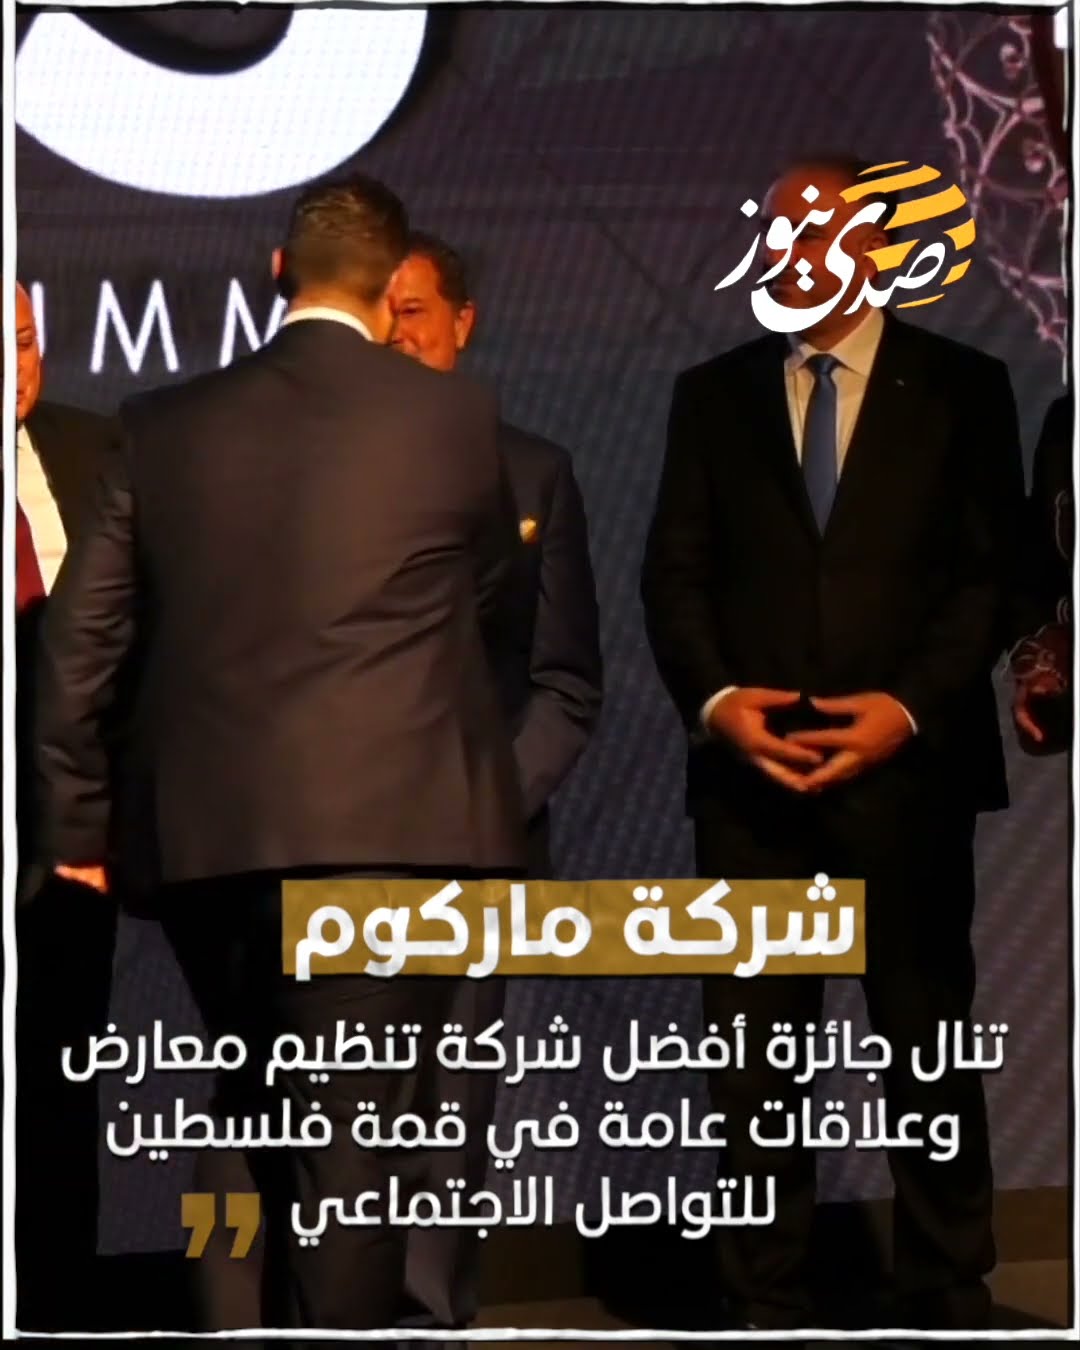 شركة ماركوم تنال جائزة أفضل شركة تنظيم معارض وعلاقات عامة في قمة فلسطين للتواصل الاجتماعي